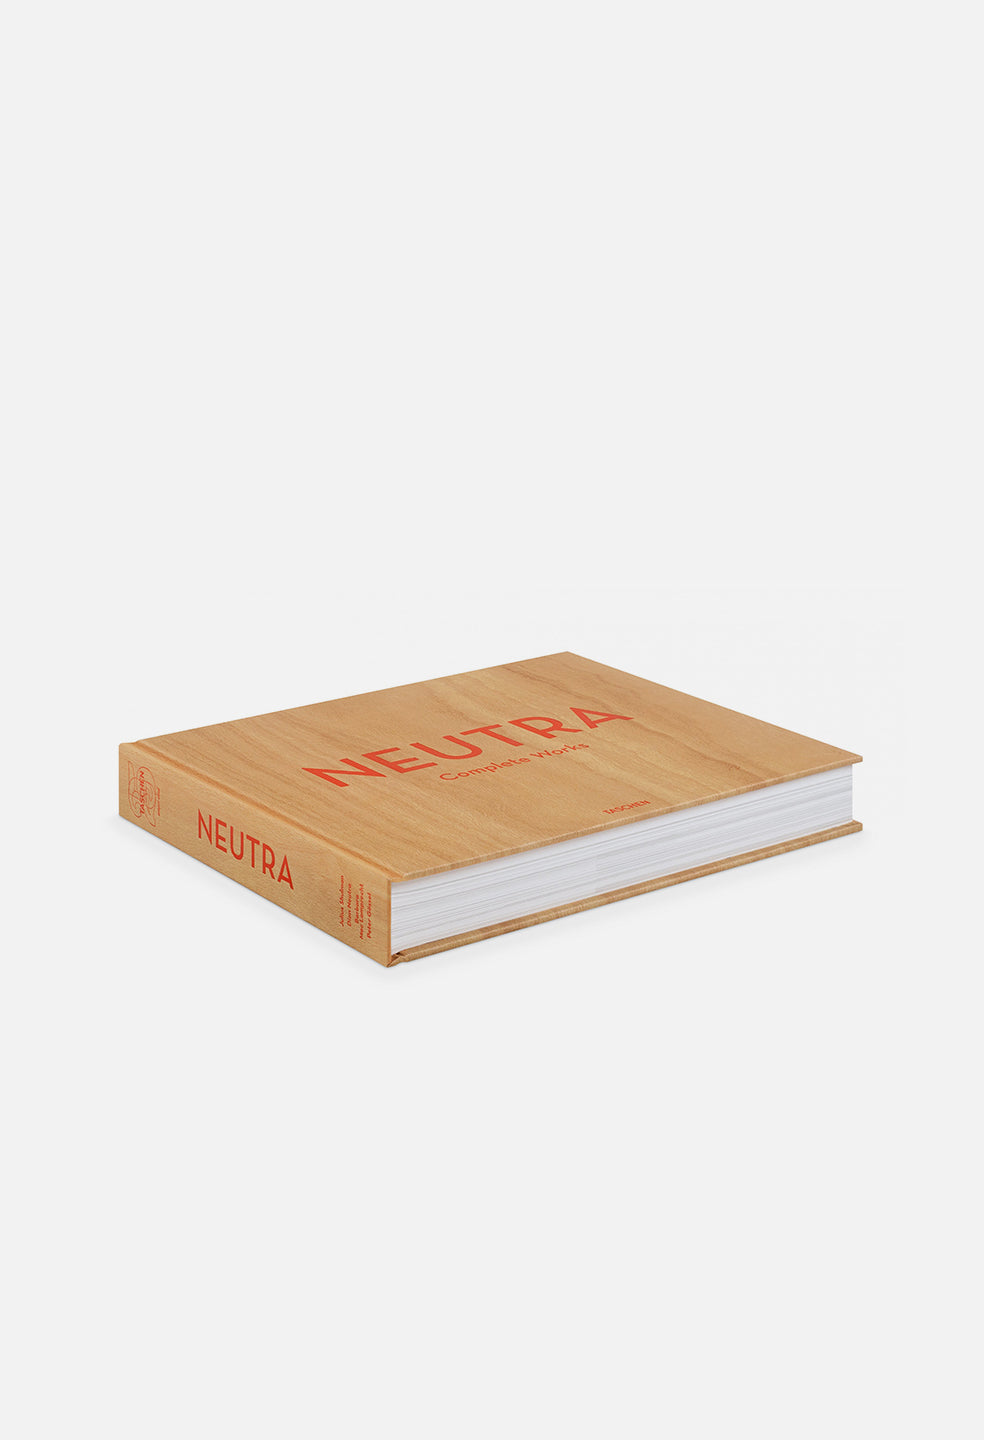 Taschen Neutra. Complete Works - JOHN ELLIOTT